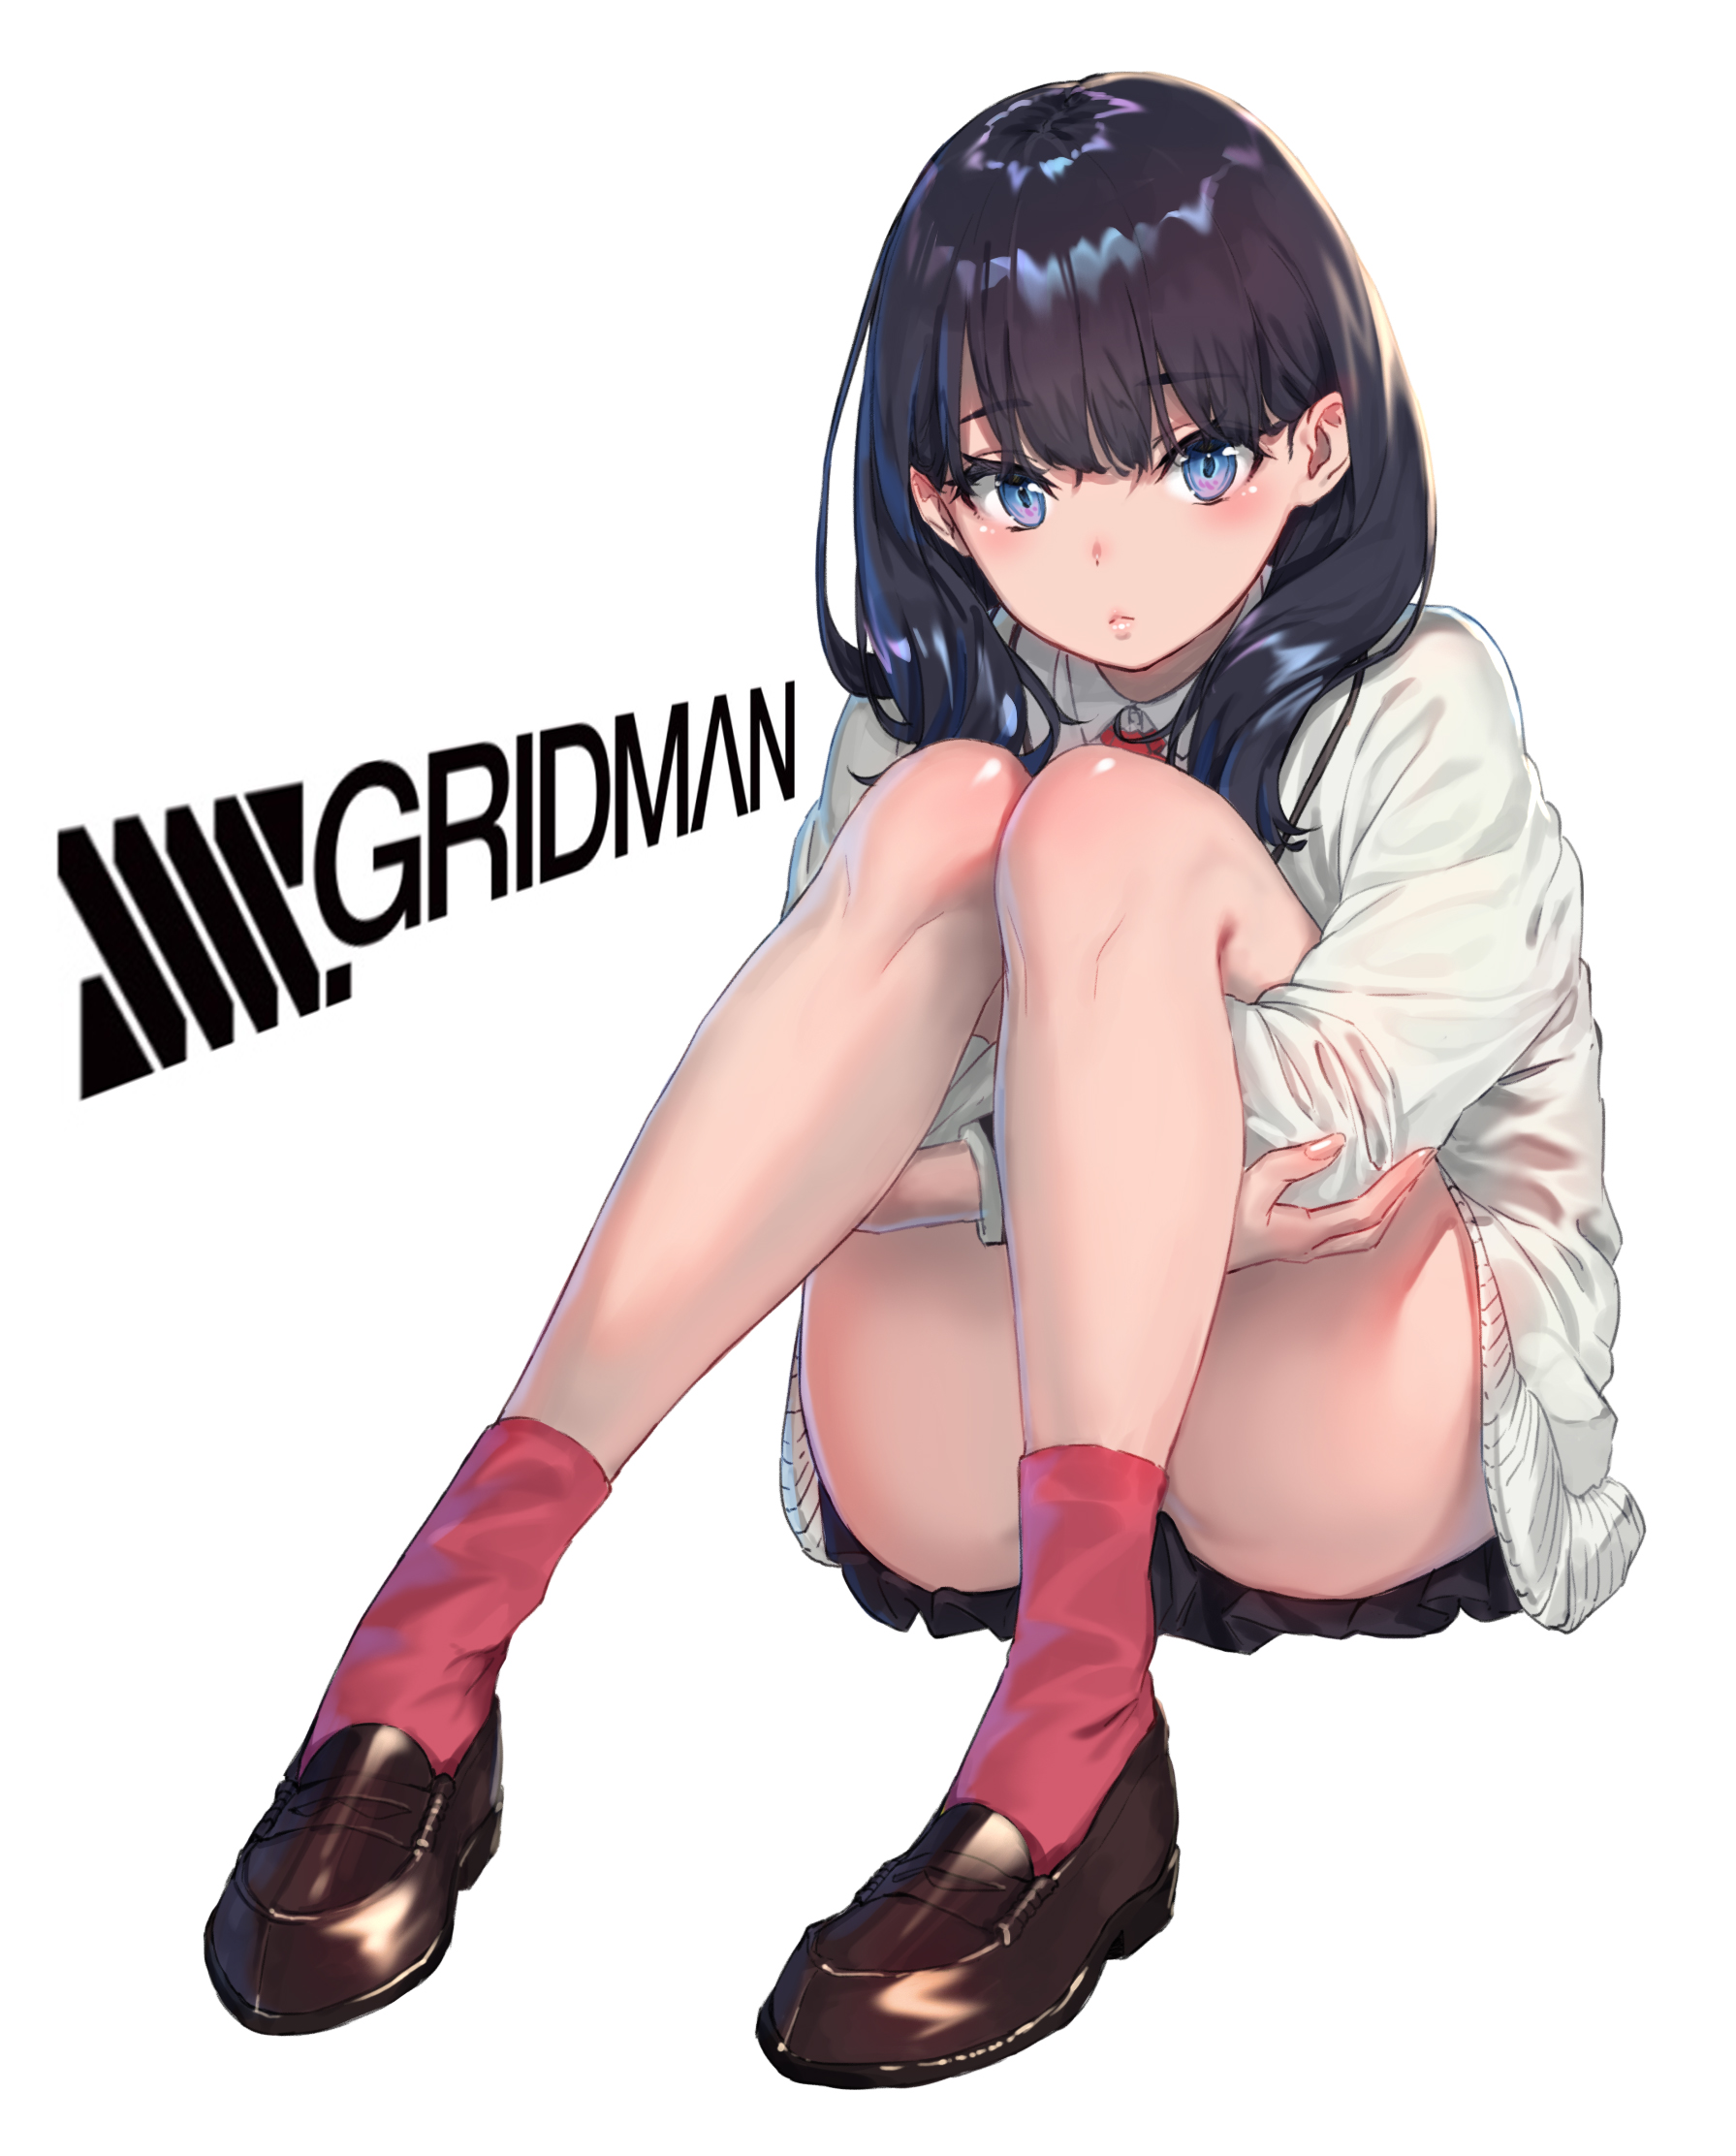 Takarada Rikka SSSS GRiDMAN Anime Fan Art Artwork Digital Art Illustration 2D Anime Girls Skirt Sock 1791x2224